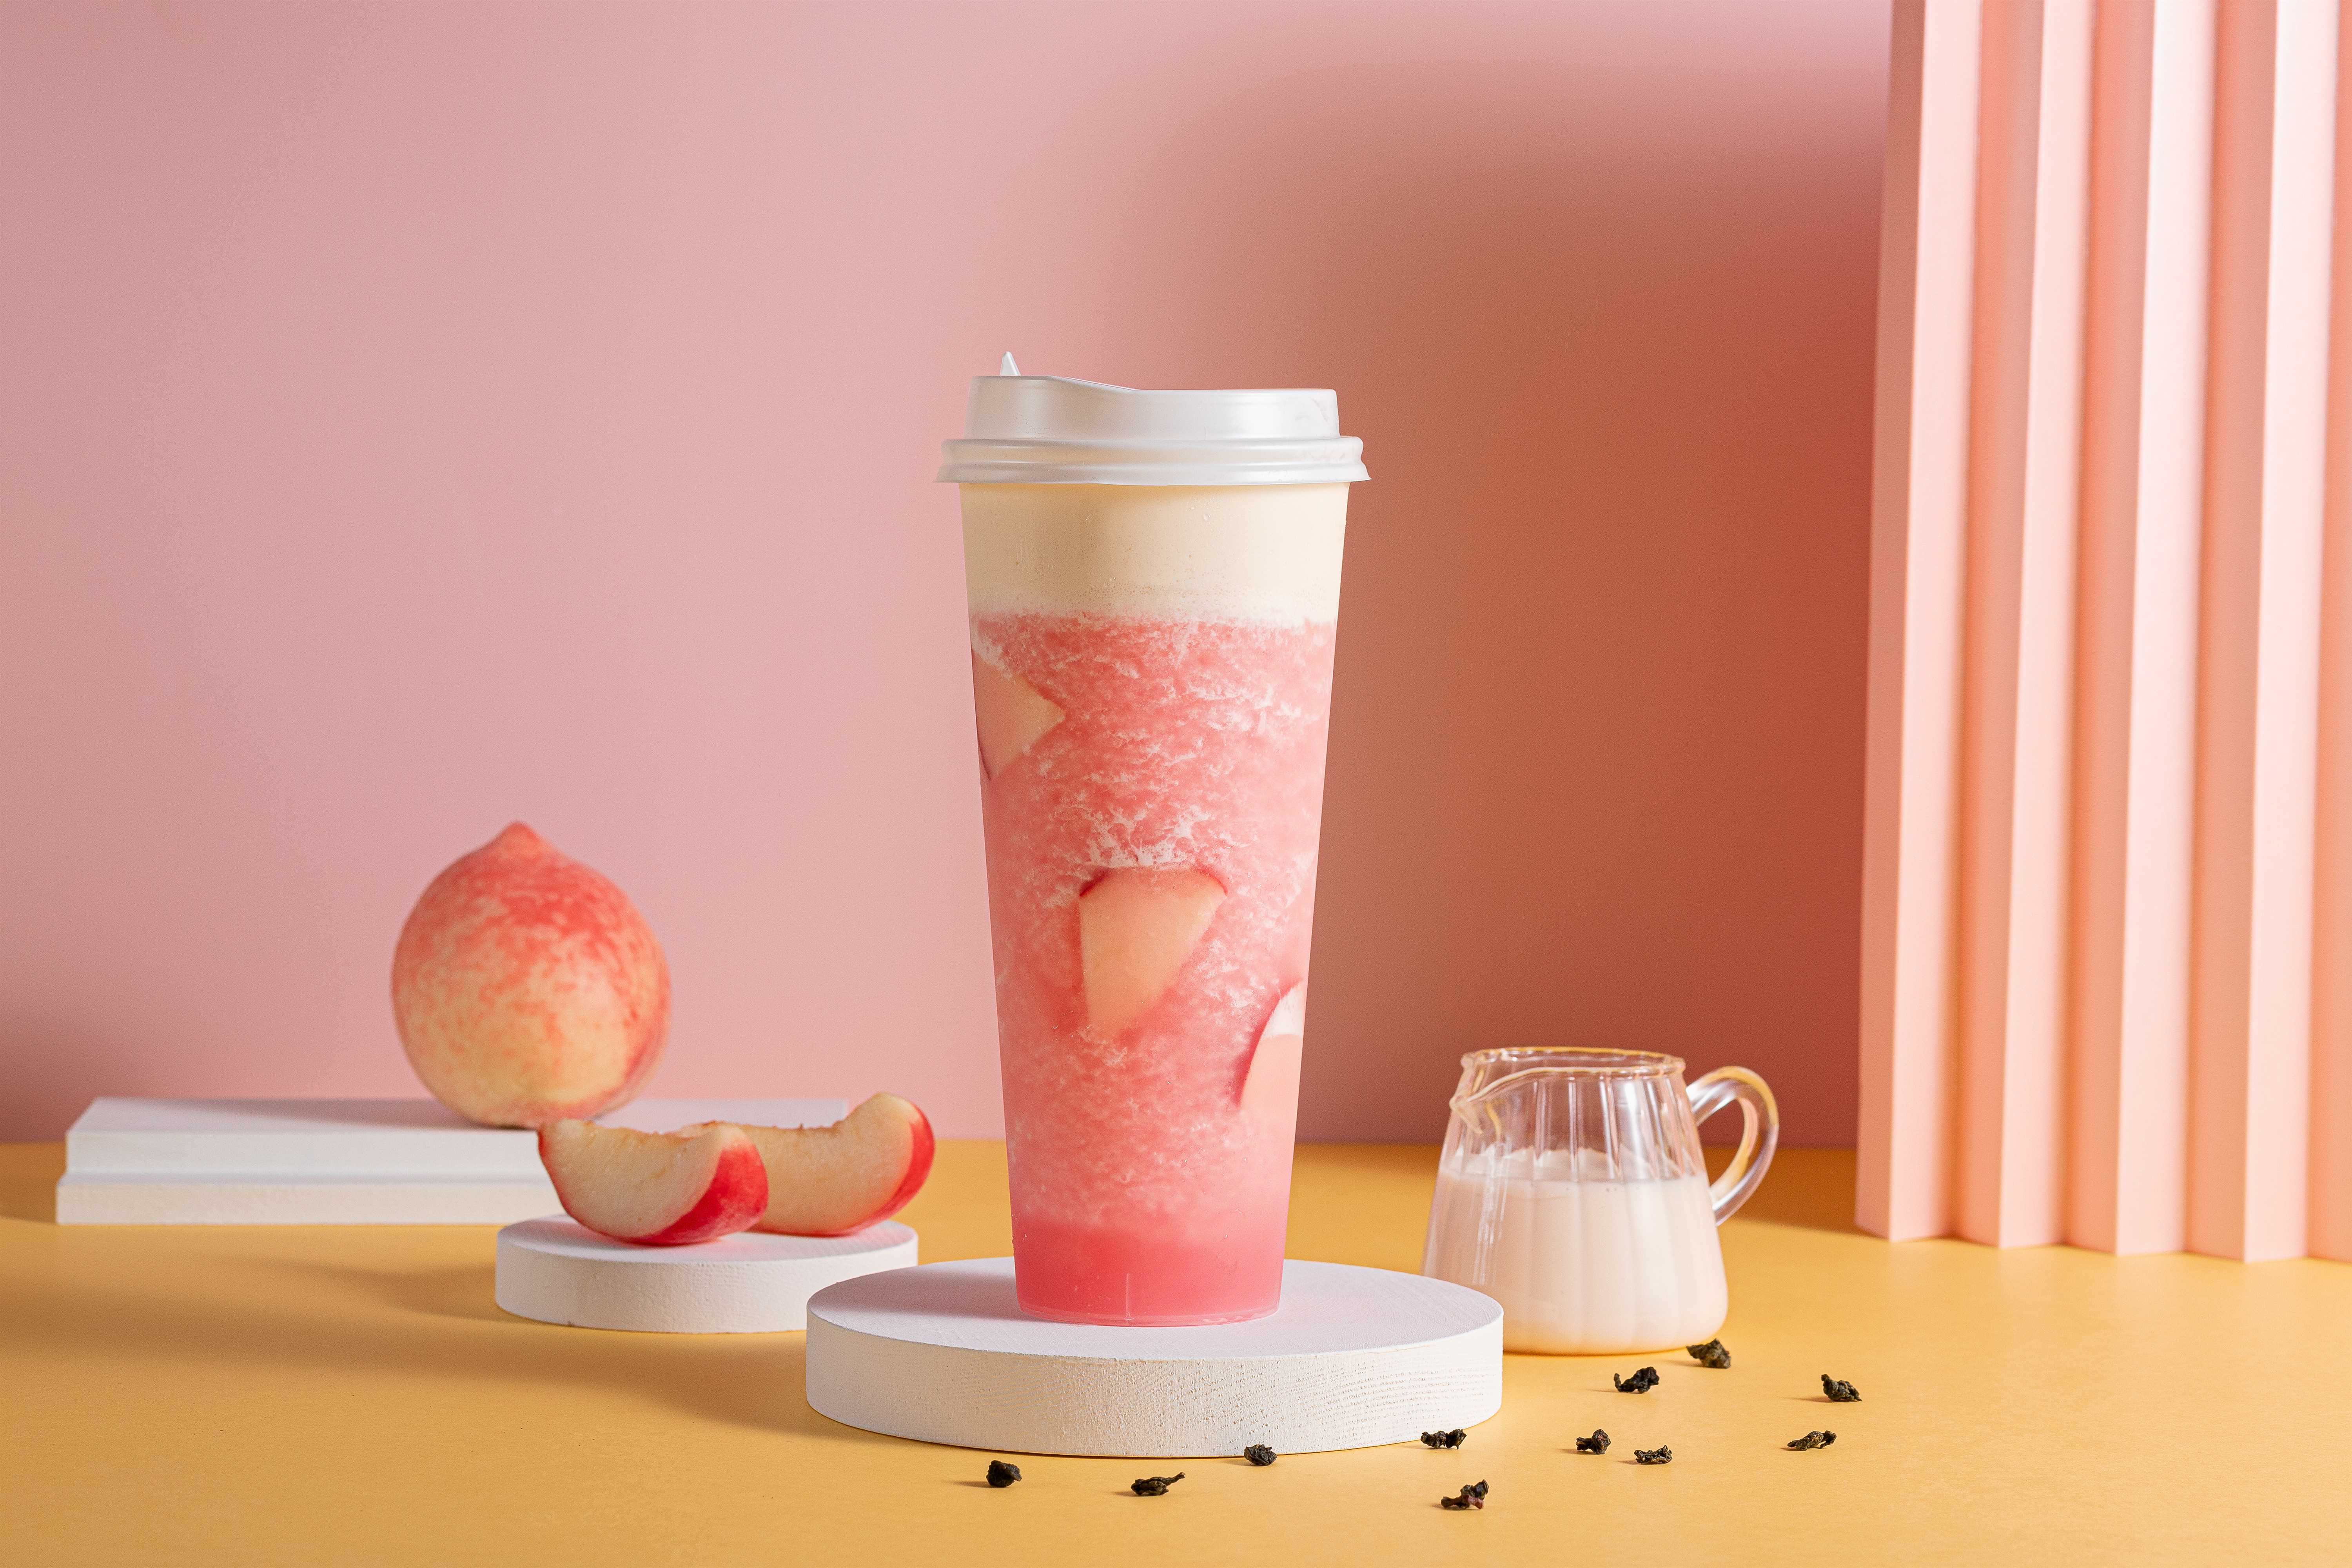 新鲜草莓柠檬水- ButterYum -一个美味的小美食亚博APP平台苹果版博客 - 亚博电竞最新招聘